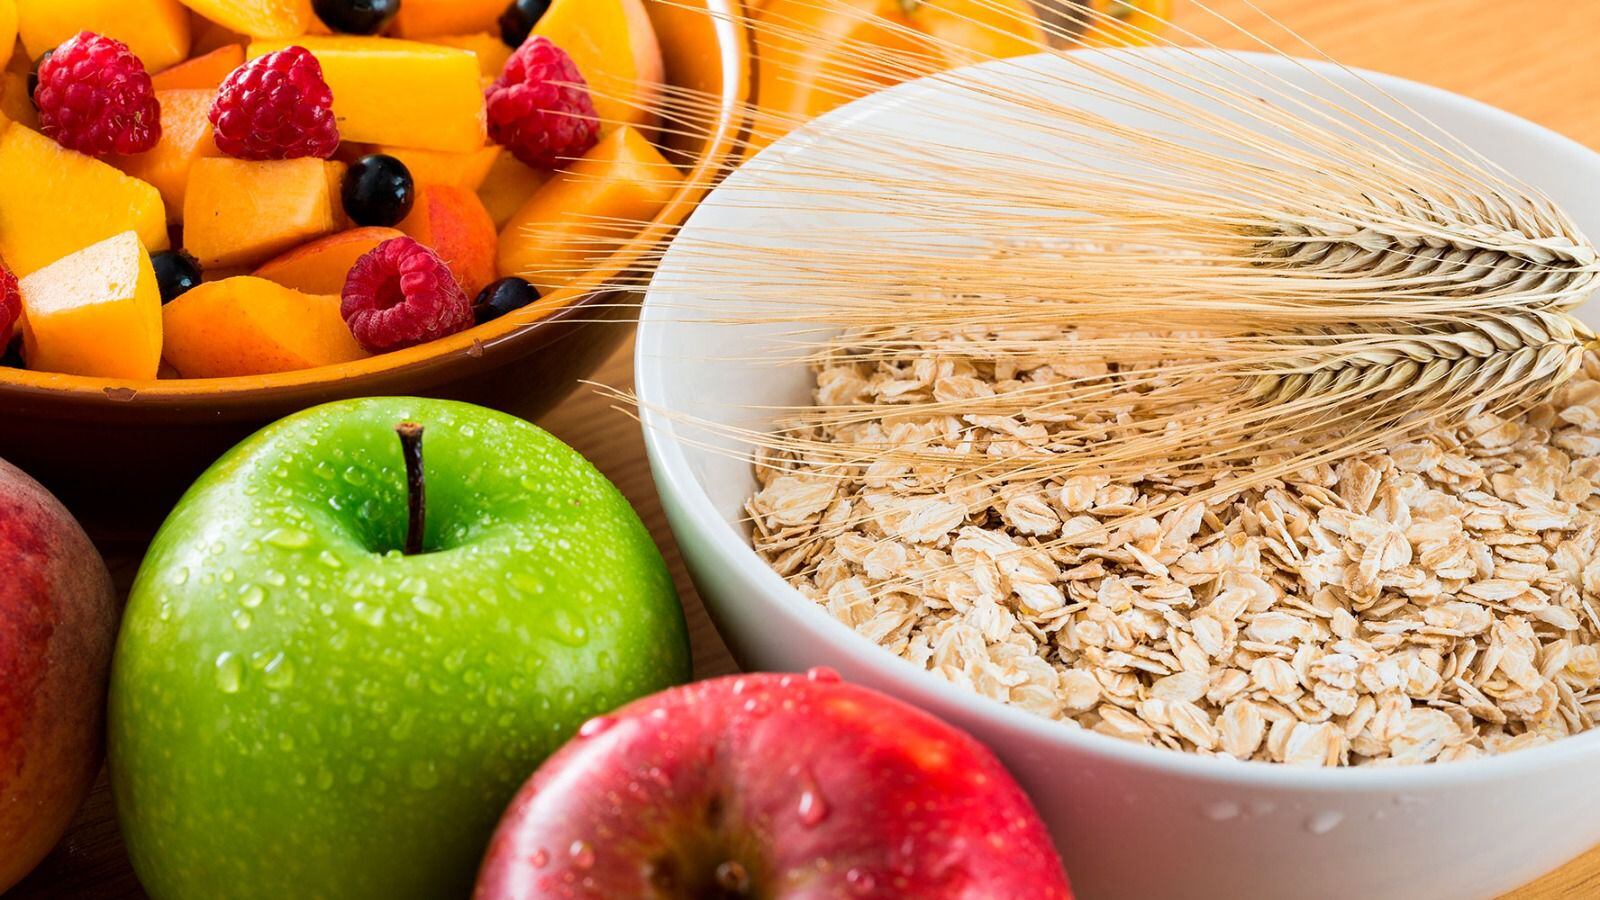 Alimentos como las manzanas, las frambuesas y la avena son opciones que contienen fibra. (Foto: Shutterstock)